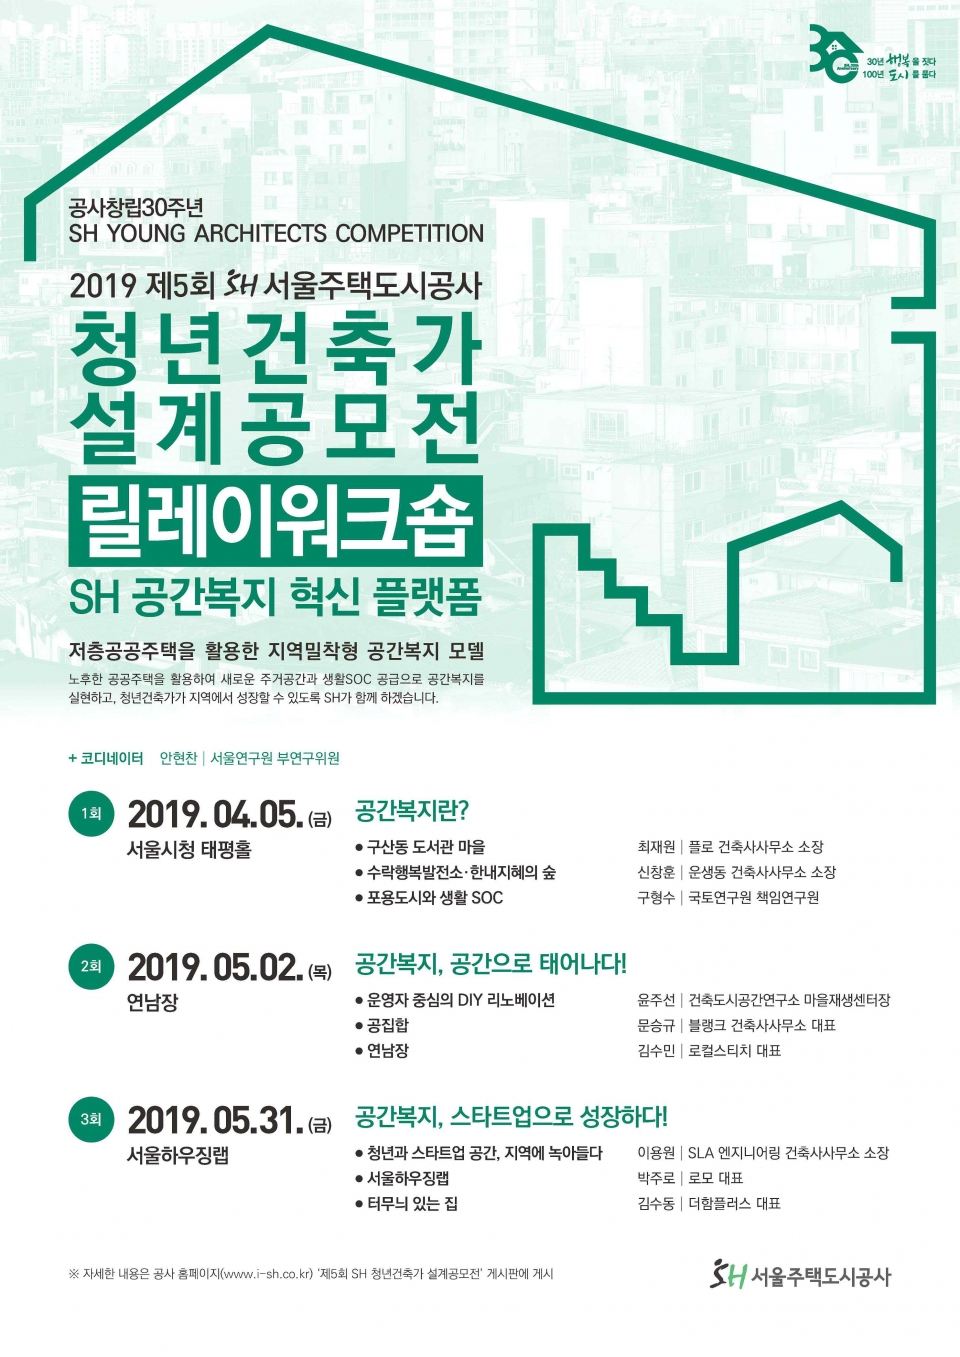 청년건축가 설계공모전 '릴레이 워크숍' 포스터 (출처: 서울주택도시공사)